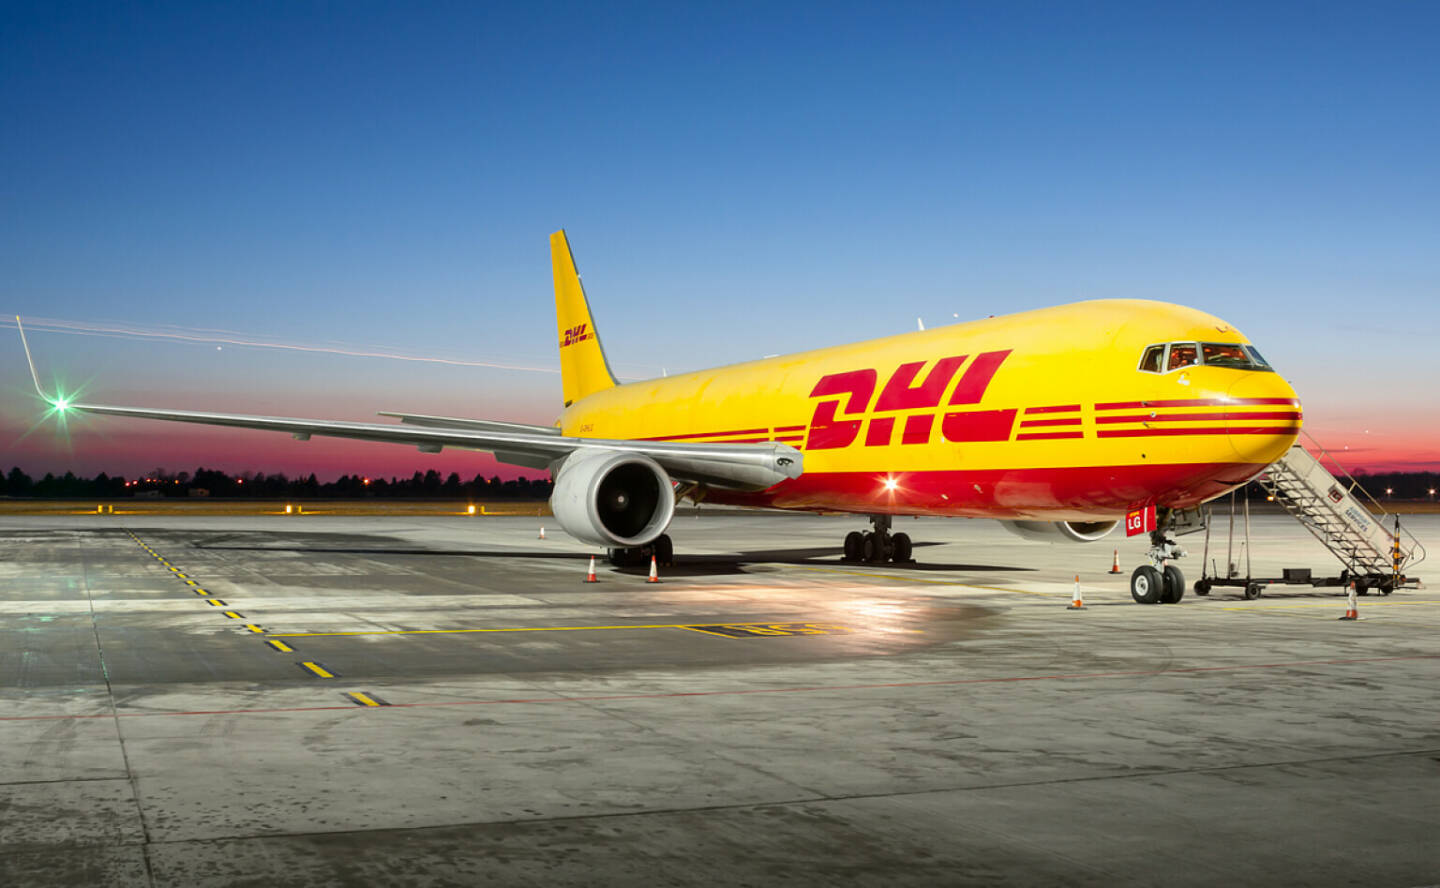 DHL Express wird vier 767-300 Boeing Converted Frachter (BCF) einsetzen, um die Flotte mit kosteneffizienten und zuverlässigen Frachtflugzeugen zu erweitern. Credit: DHL